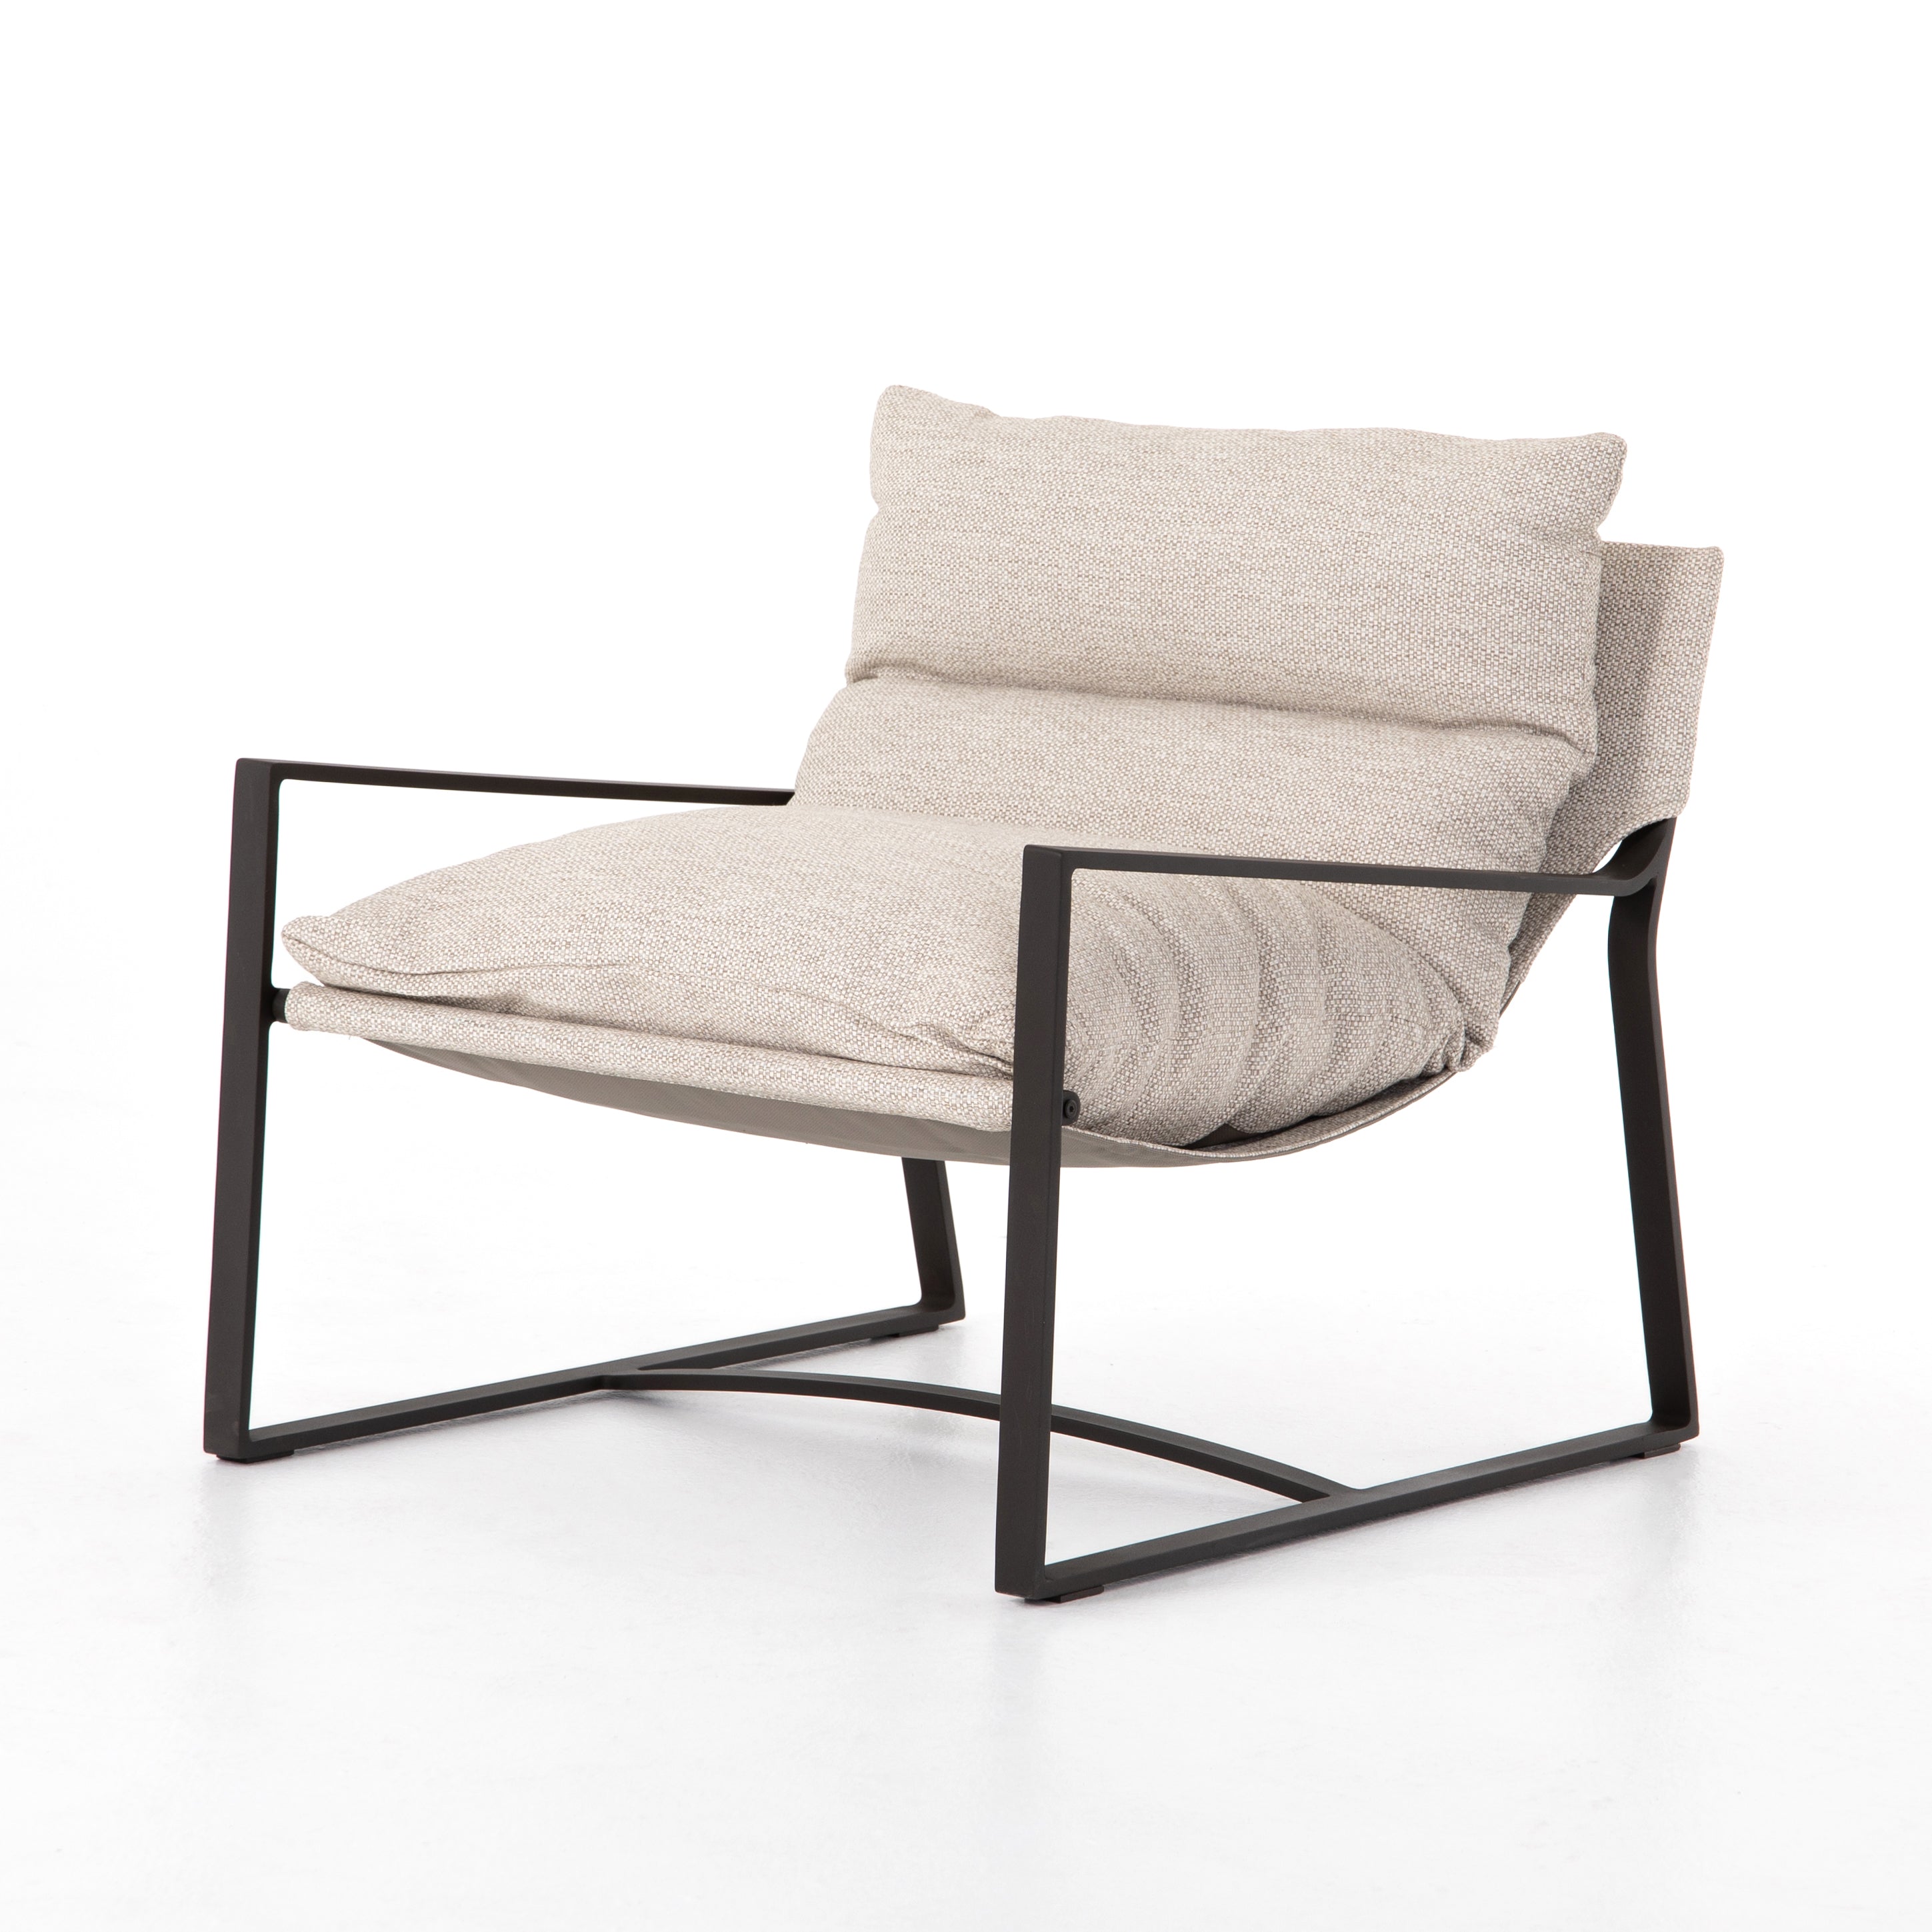 Avon Outdoor Sling Chair-Bronze/Sand - StyleMeGHD - 